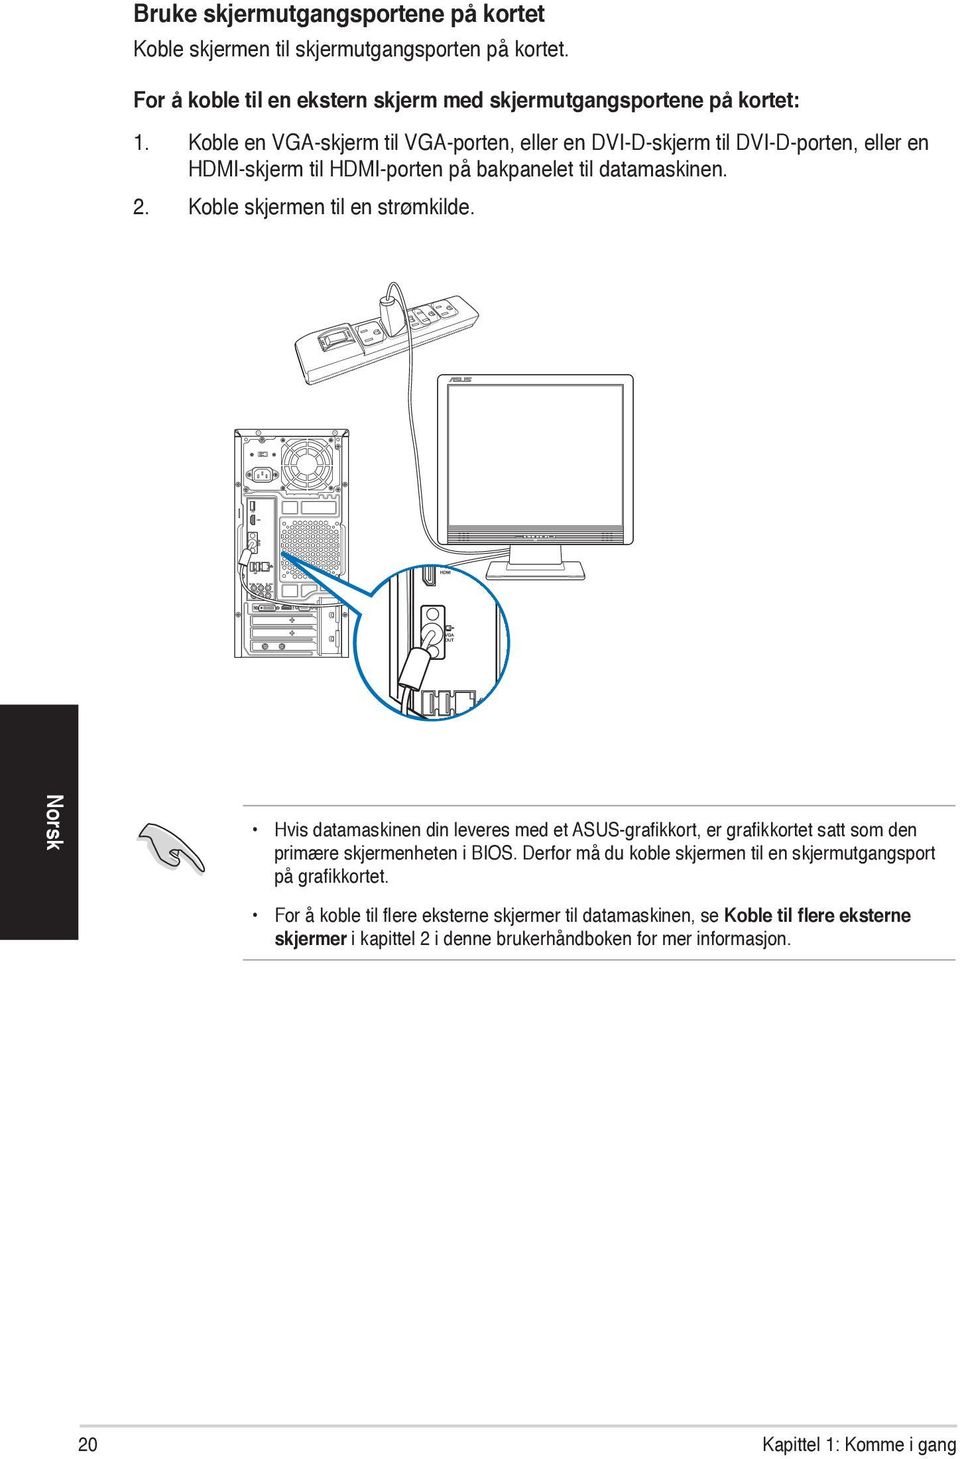 Koble skjermen til en strømkilde. Norsk Hvis datamaskinen din leveres med et ASUS-grafikkort, er grafikkortet satt som den primære skjermenheten i BIOS.